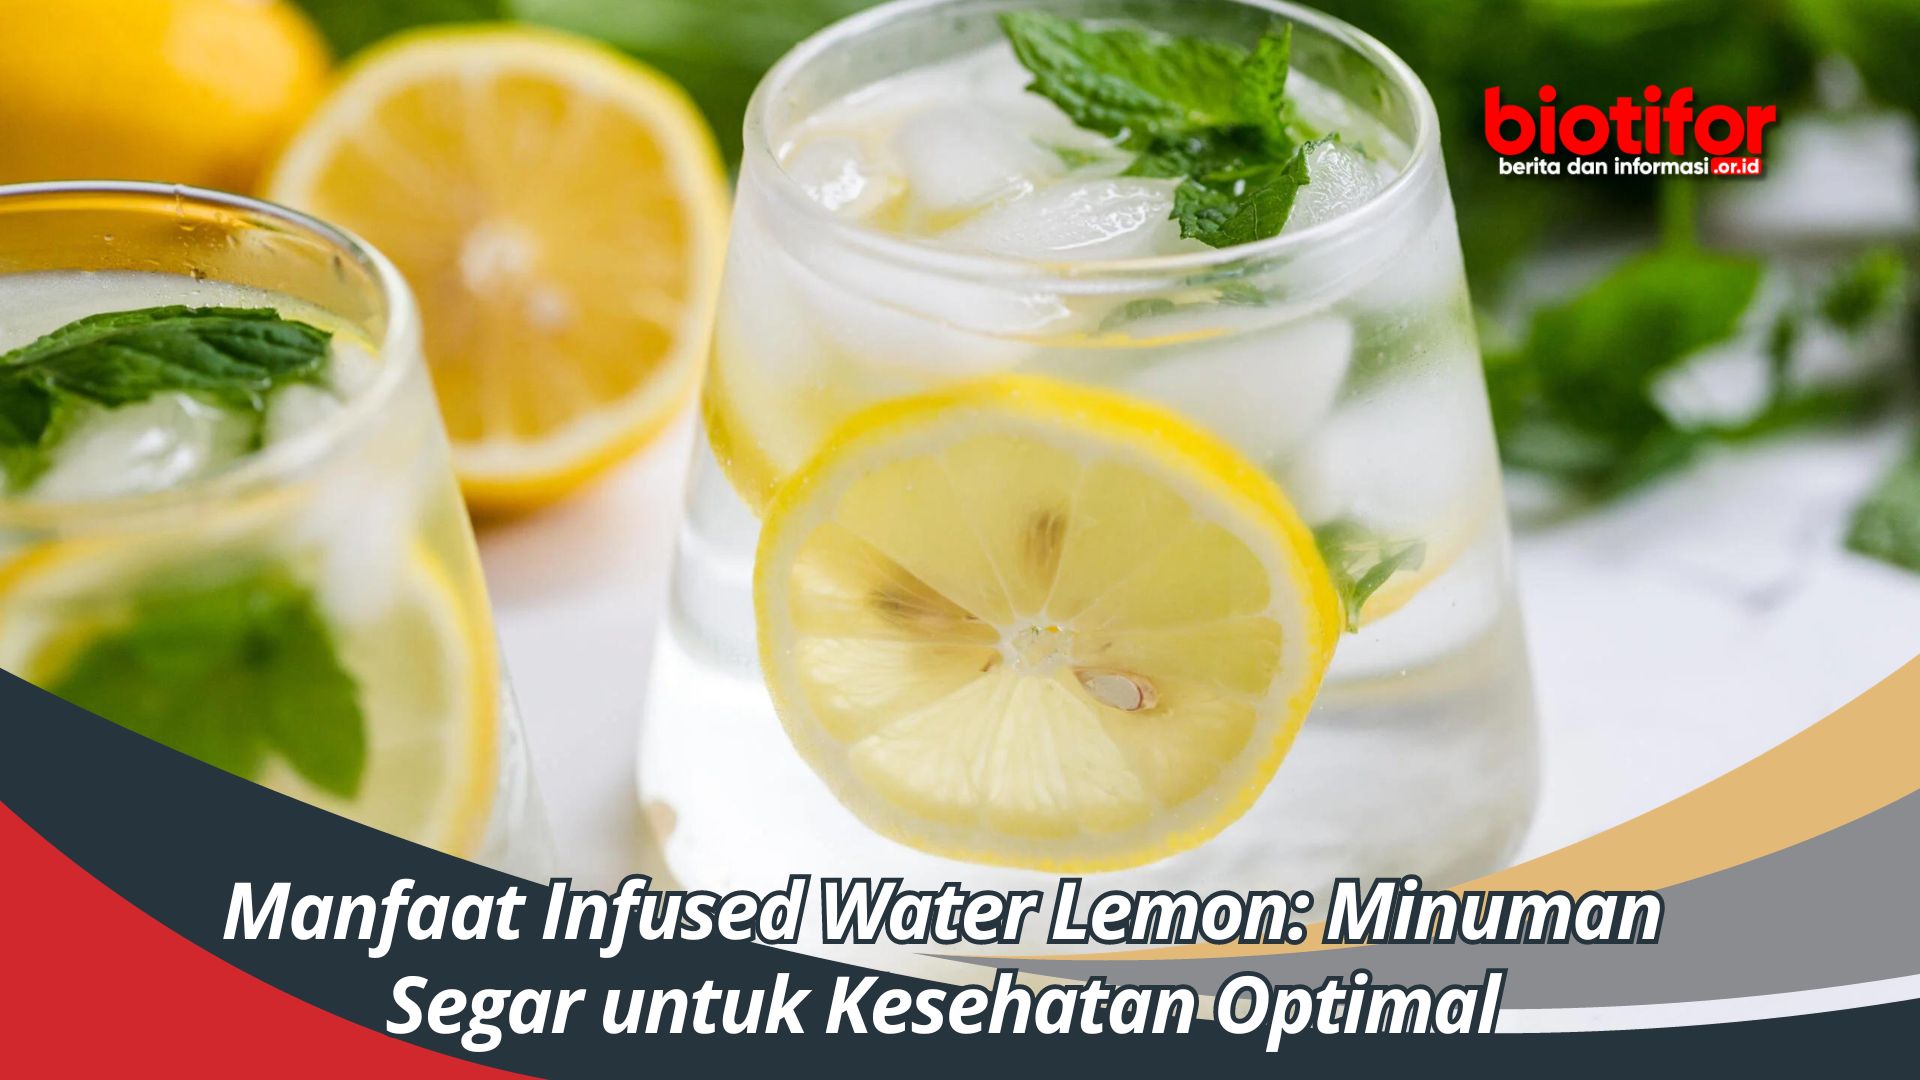 Manfaat Infused Water Lemon: Minuman Segar untuk Kesehatan Optimal